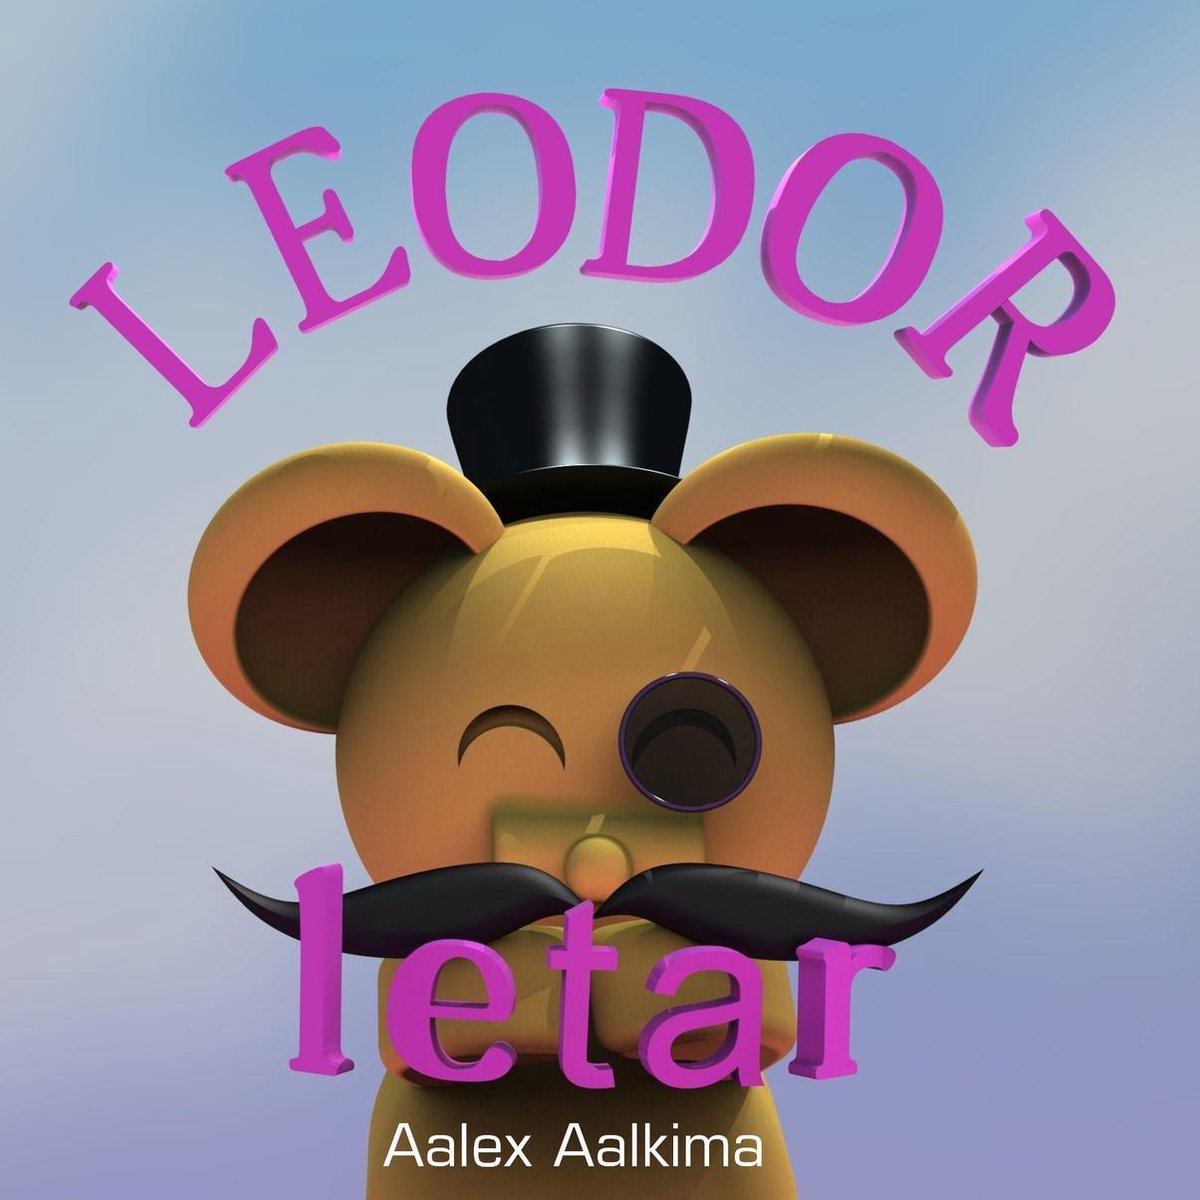 Leodor letar - Aalex Aalkima